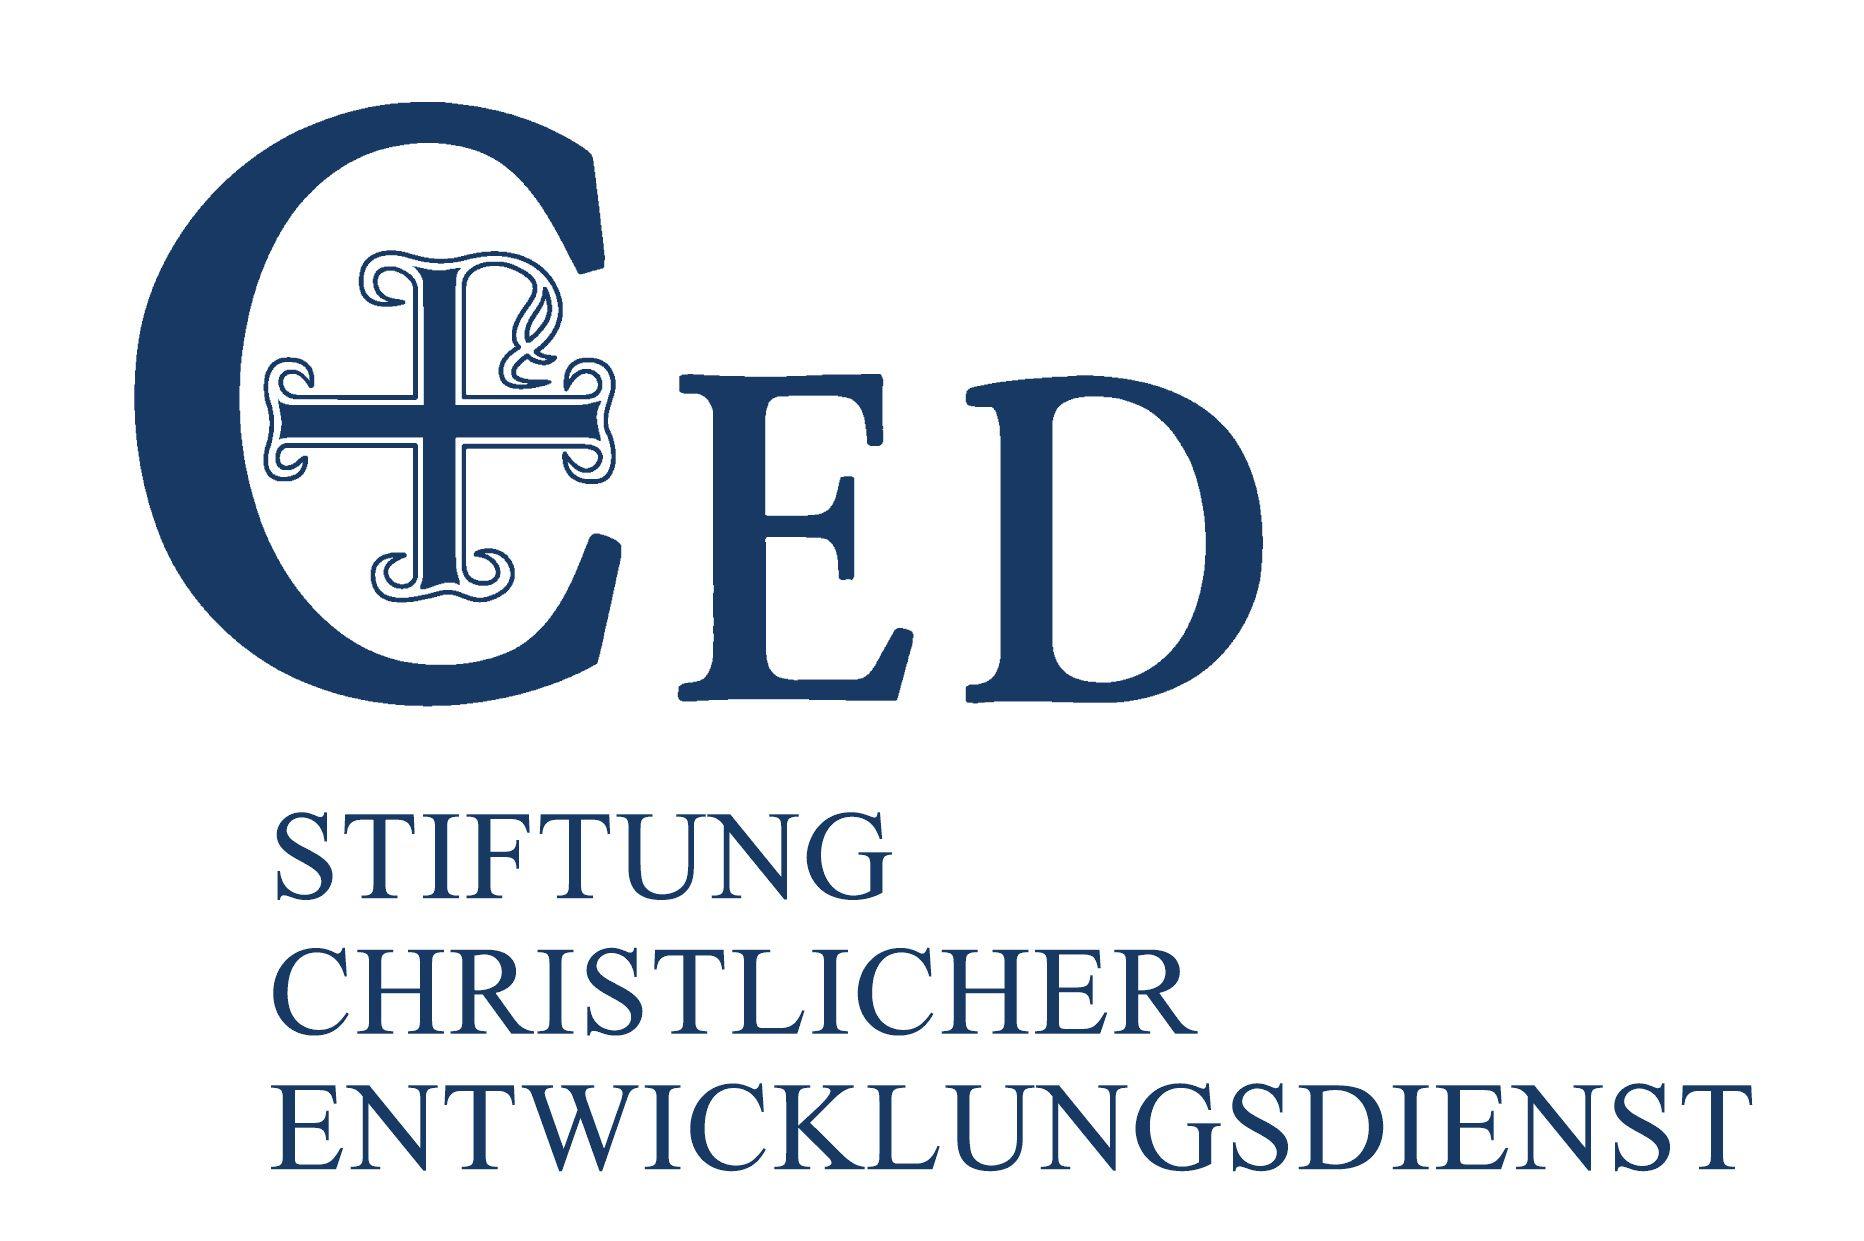 CED Logo - CED